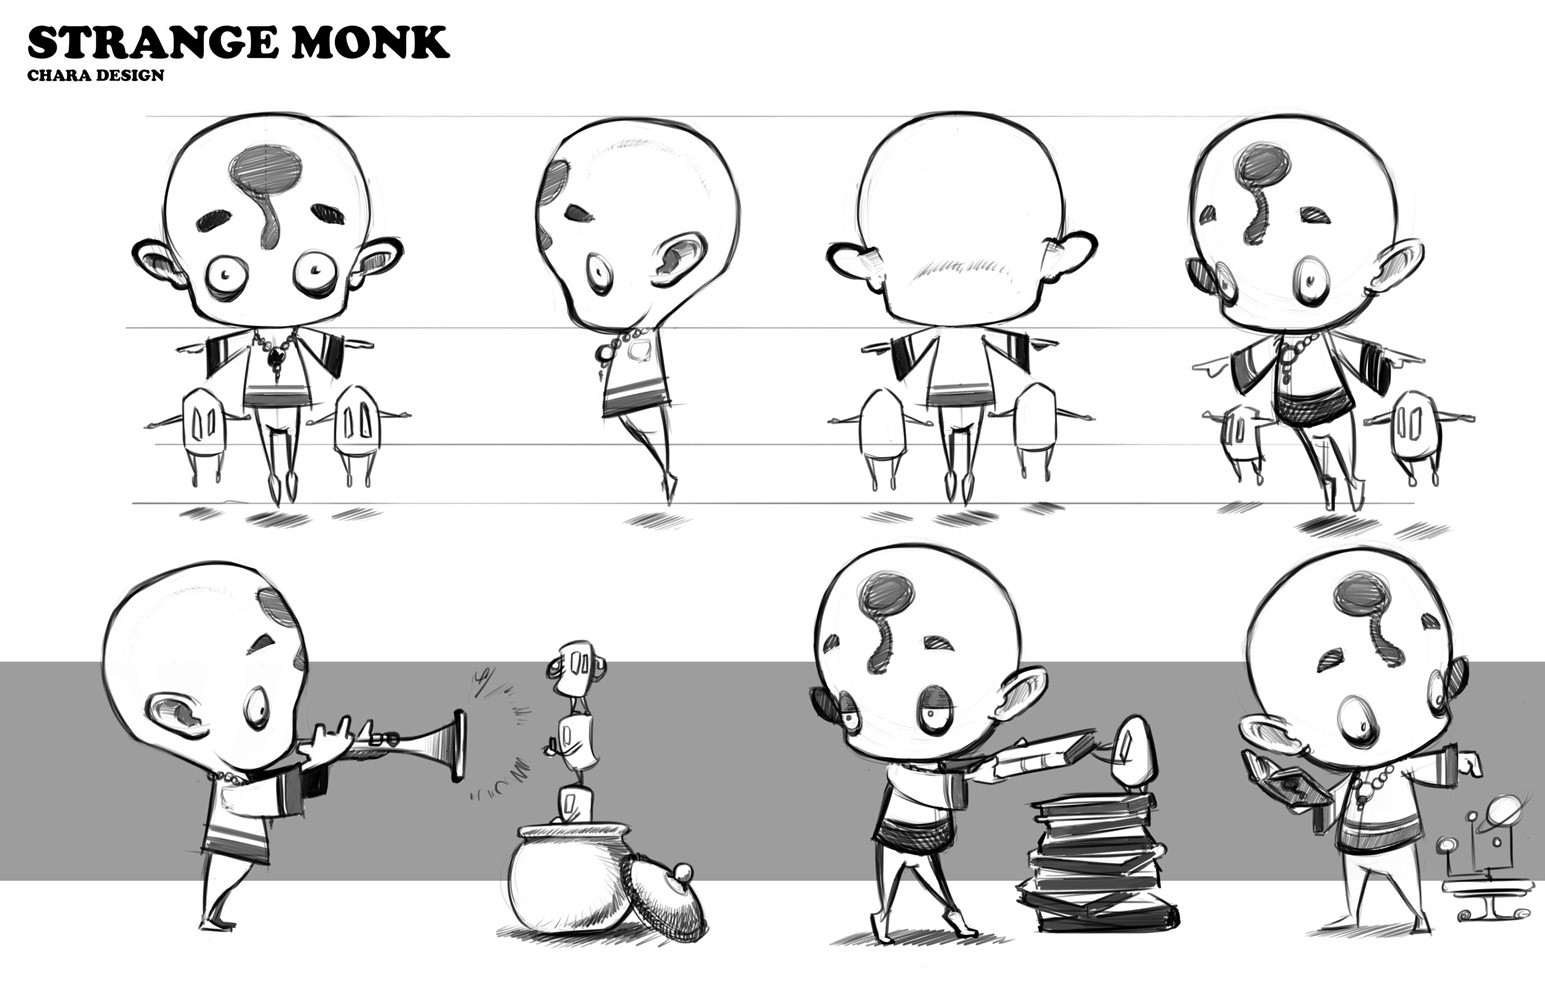 a sketch of a strange monk